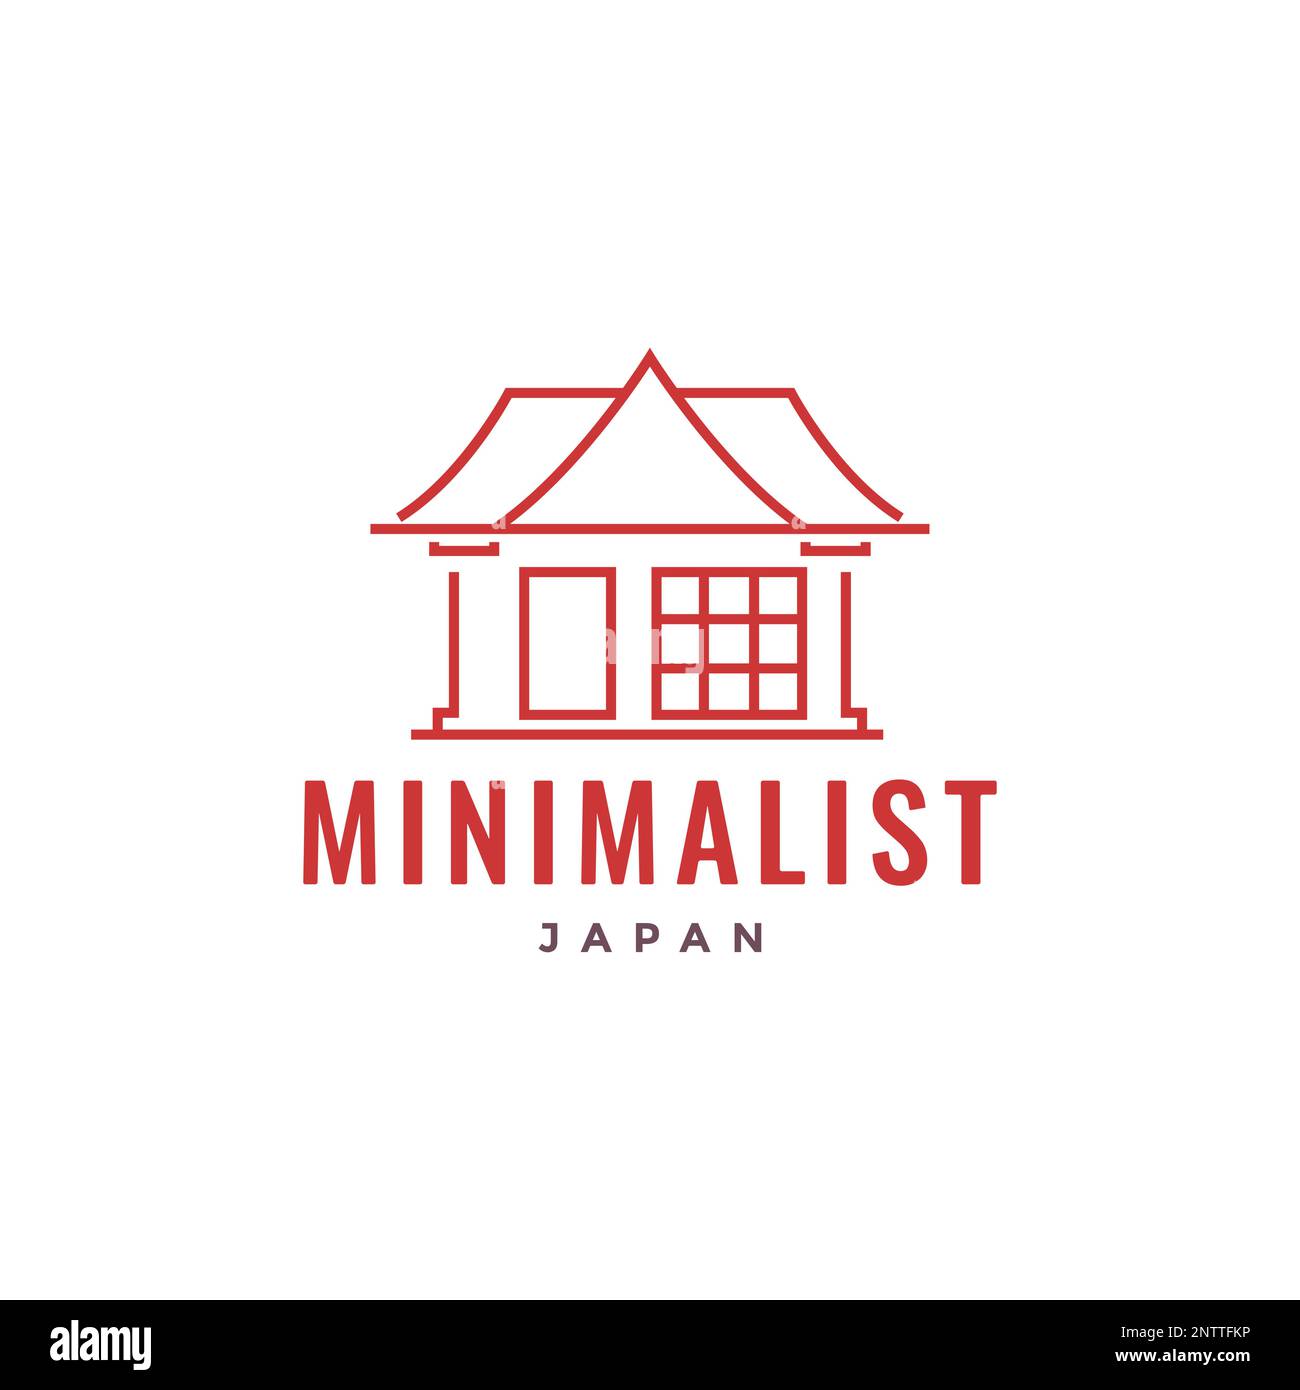 accueil culture bois minimal village japonais simple minimal logo design vecteur Illustration de Vecteur